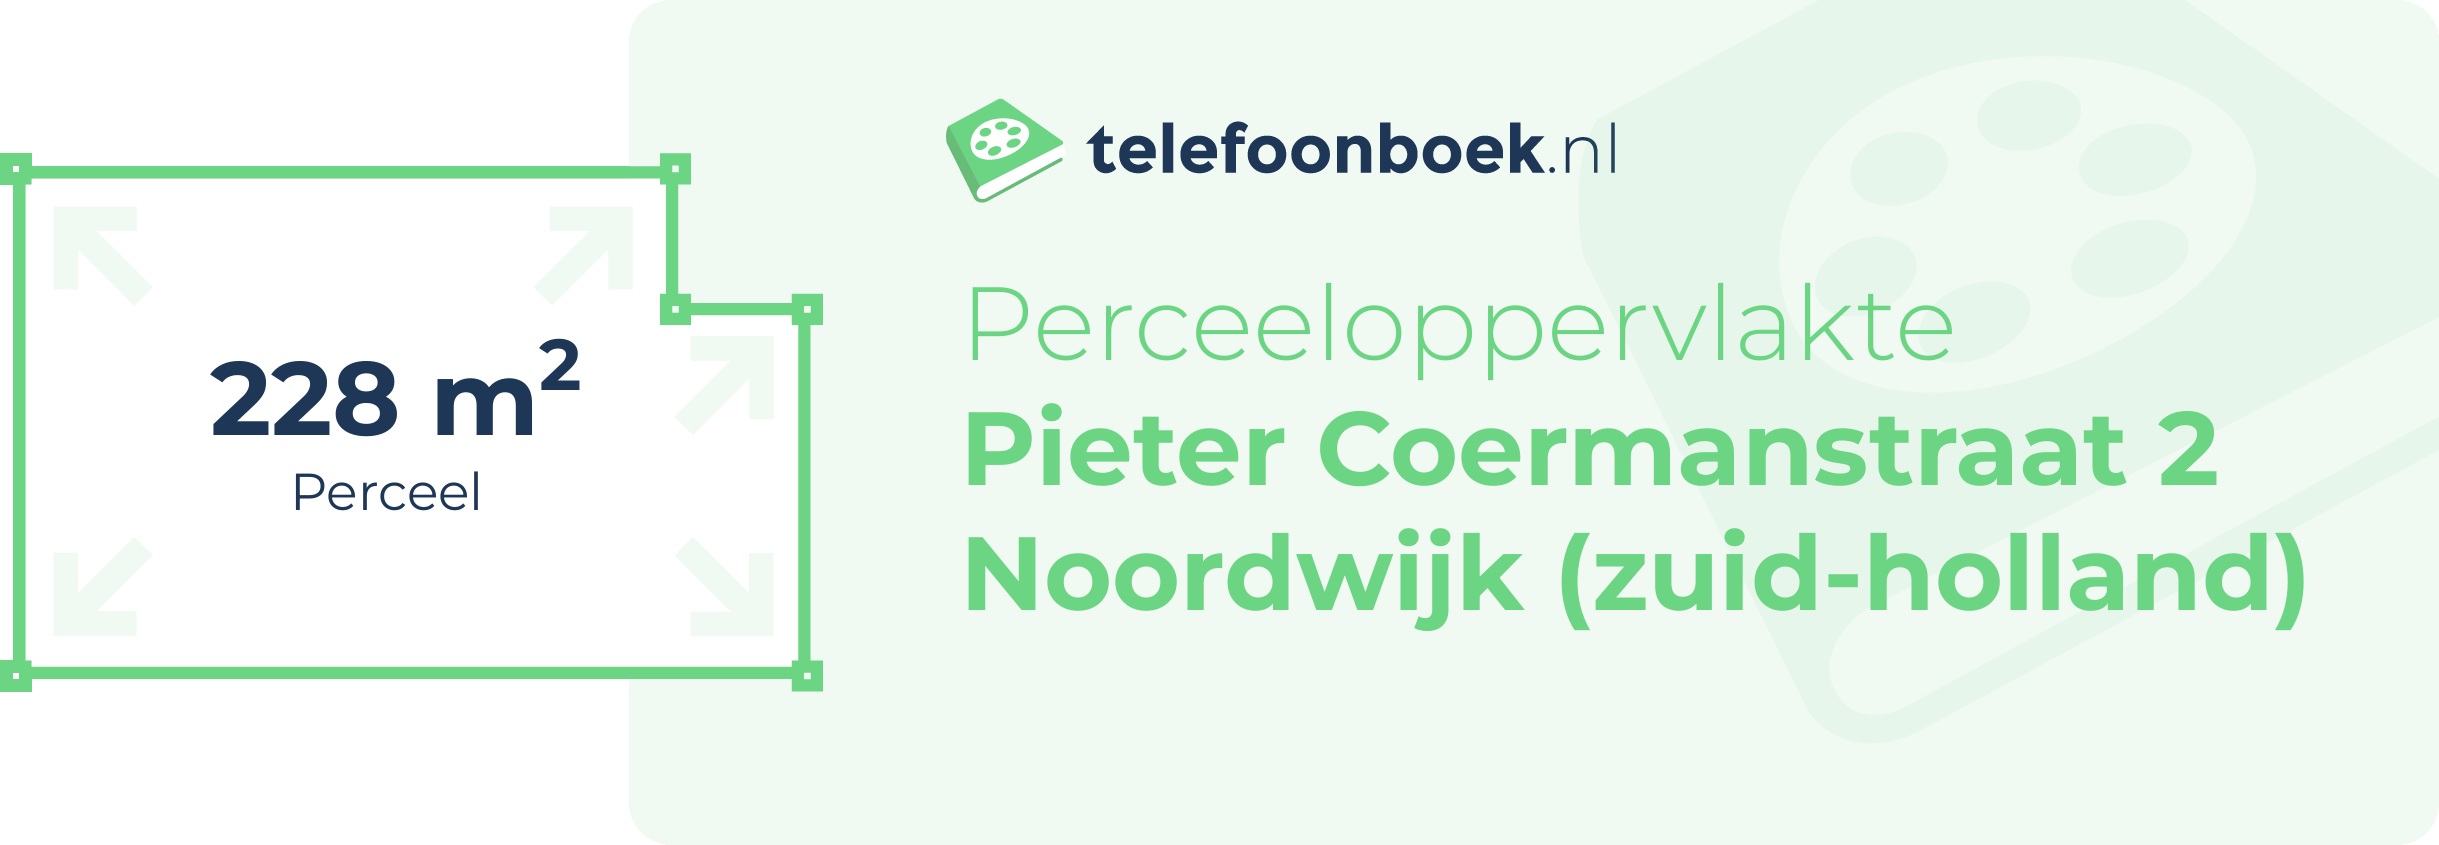 Perceeloppervlakte Pieter Coermanstraat 2 Noordwijk (Zuid-Holland)